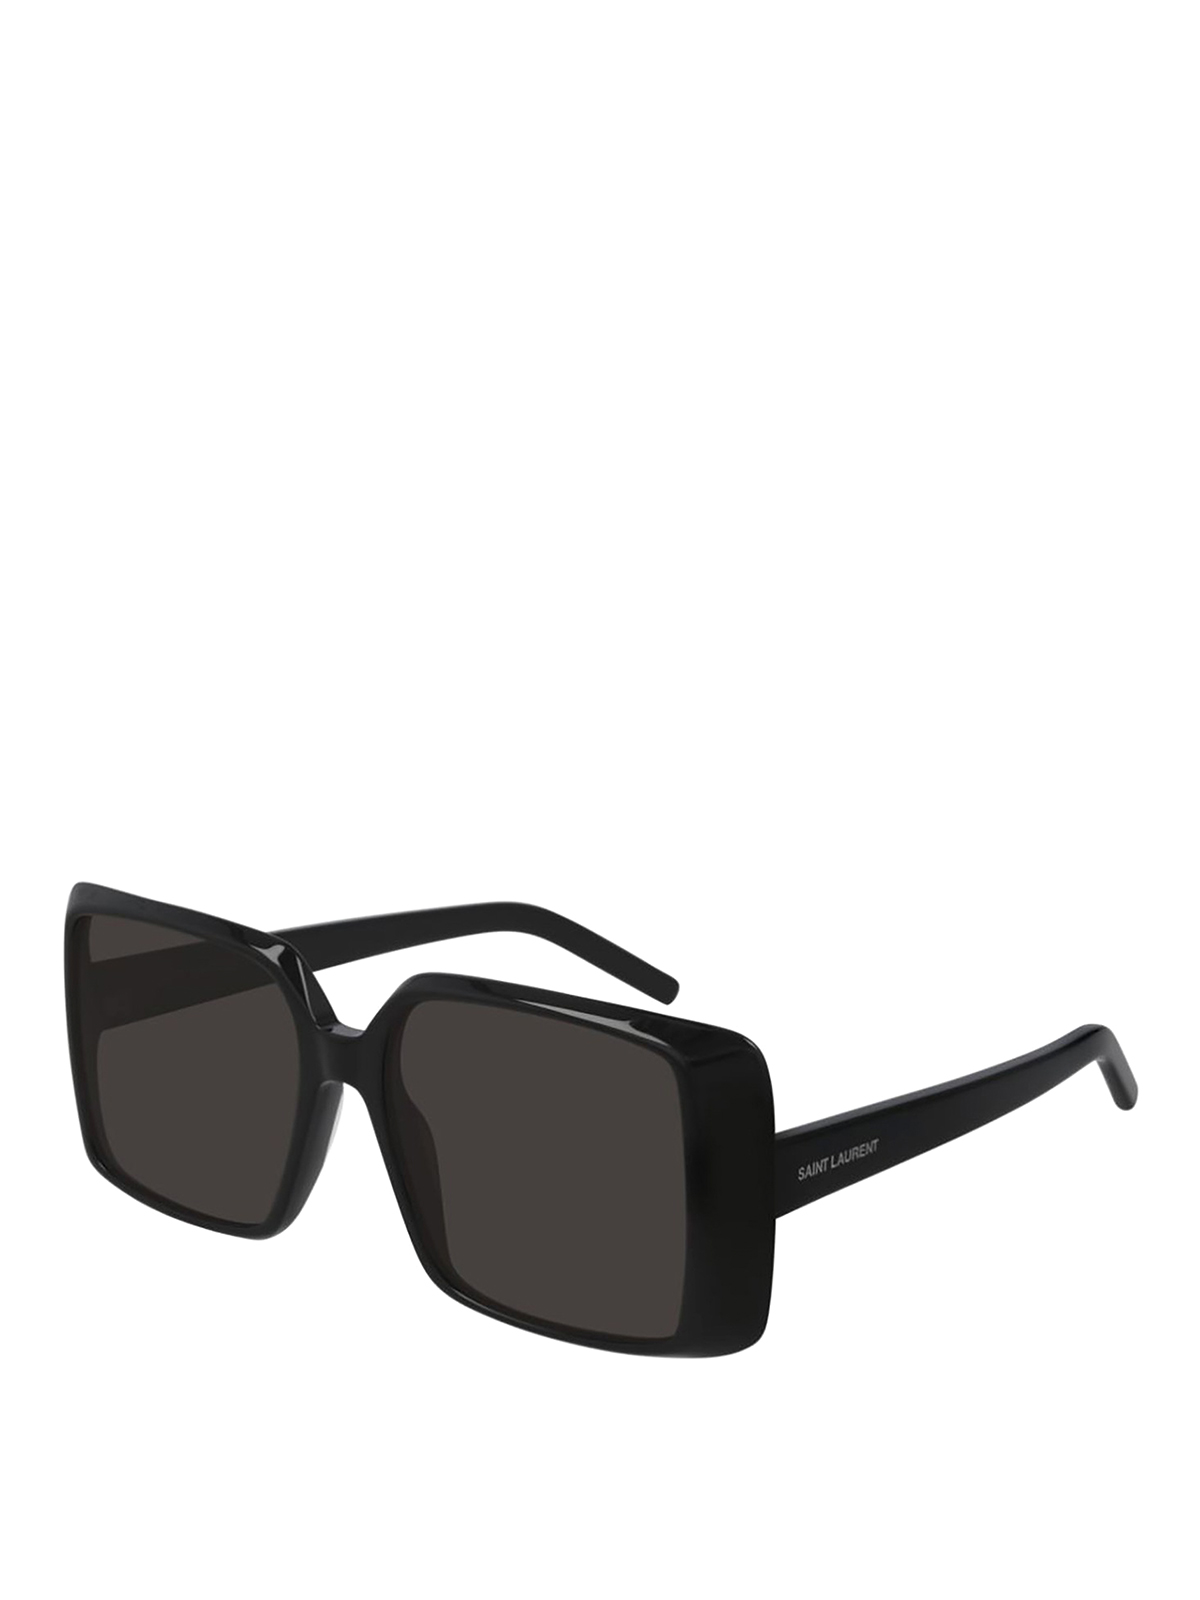 Saint Laurent Squared Sunglasses In Black